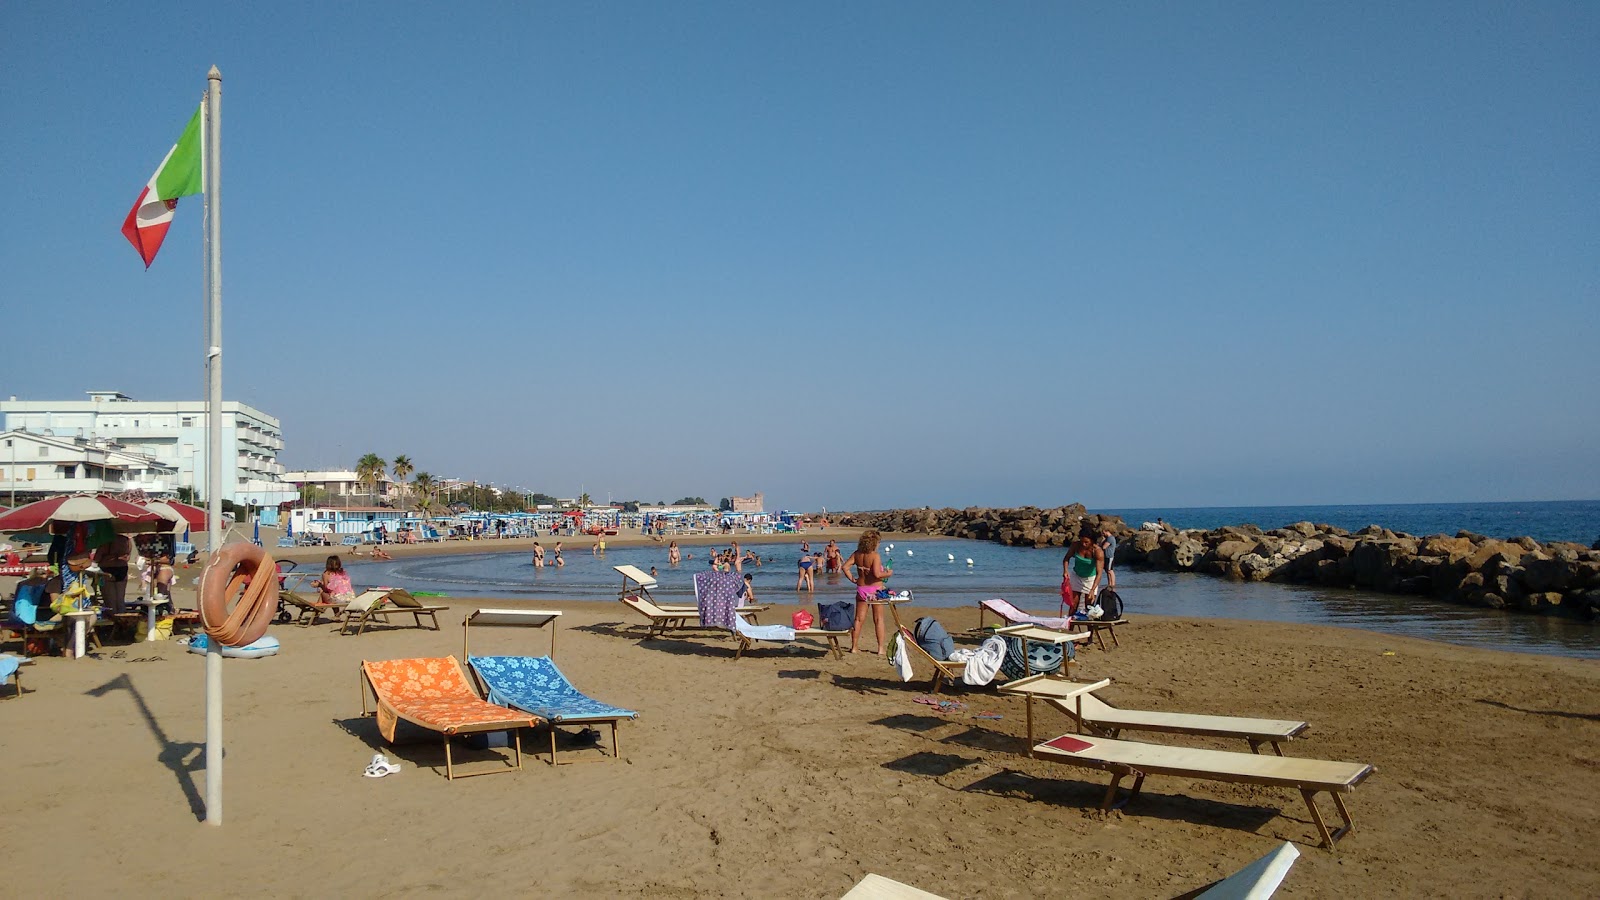 Santa Severa Plajı'in fotoğrafı kahverengi kum yüzey ile